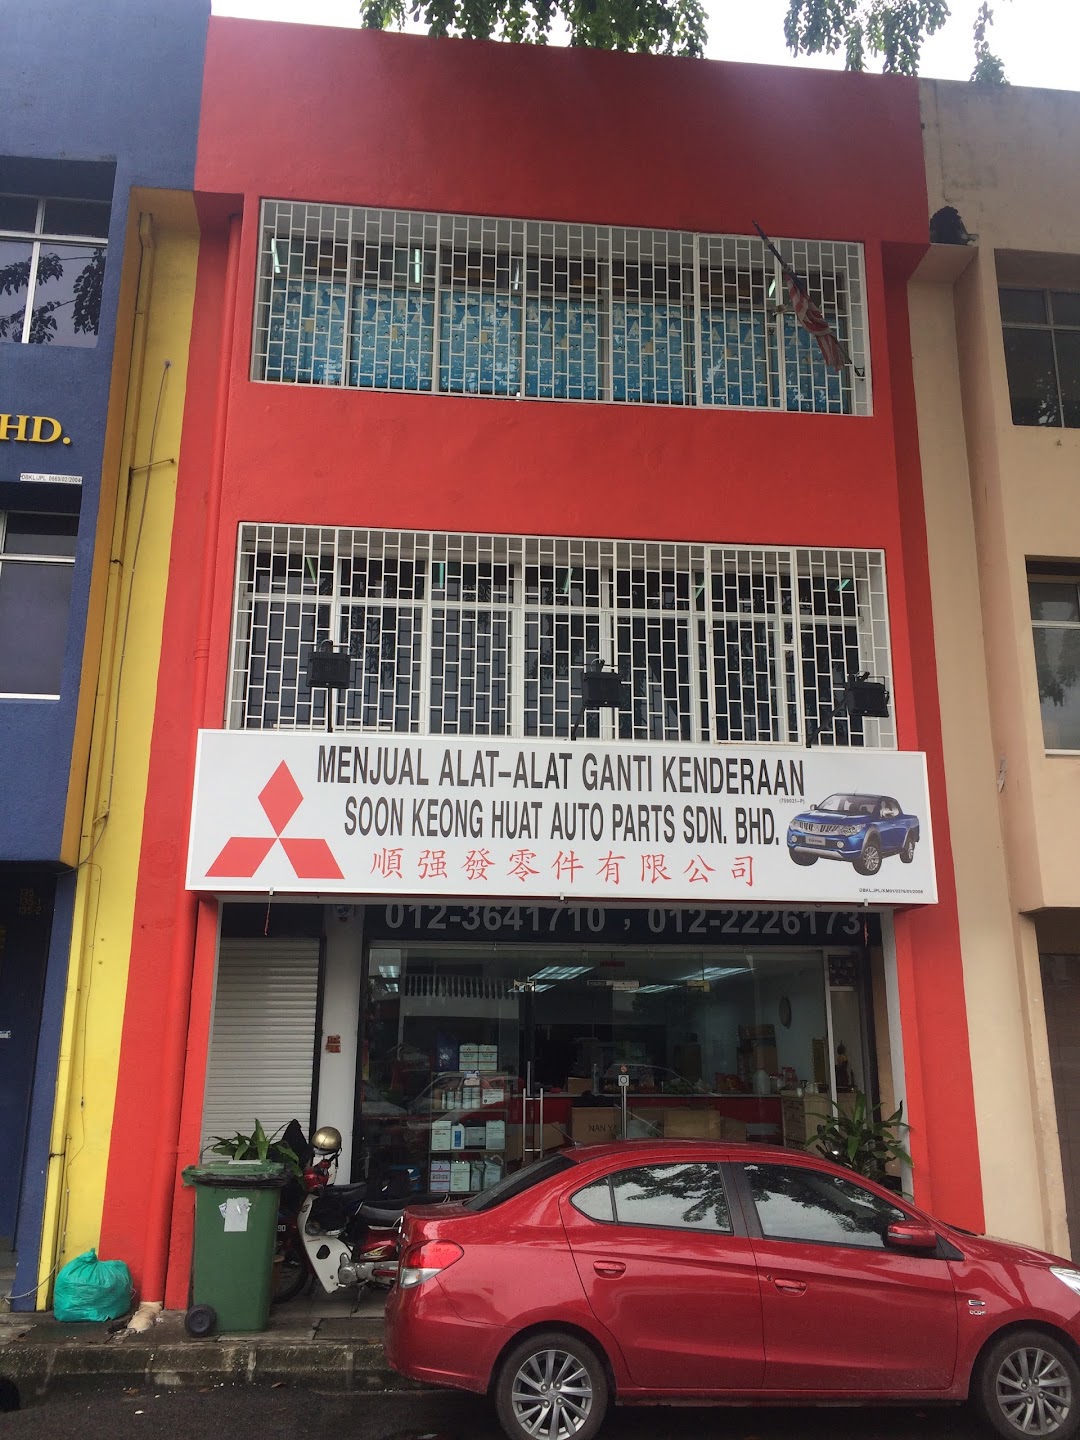 Soon Keong Huat Auto Parts Sdn. Bhd.